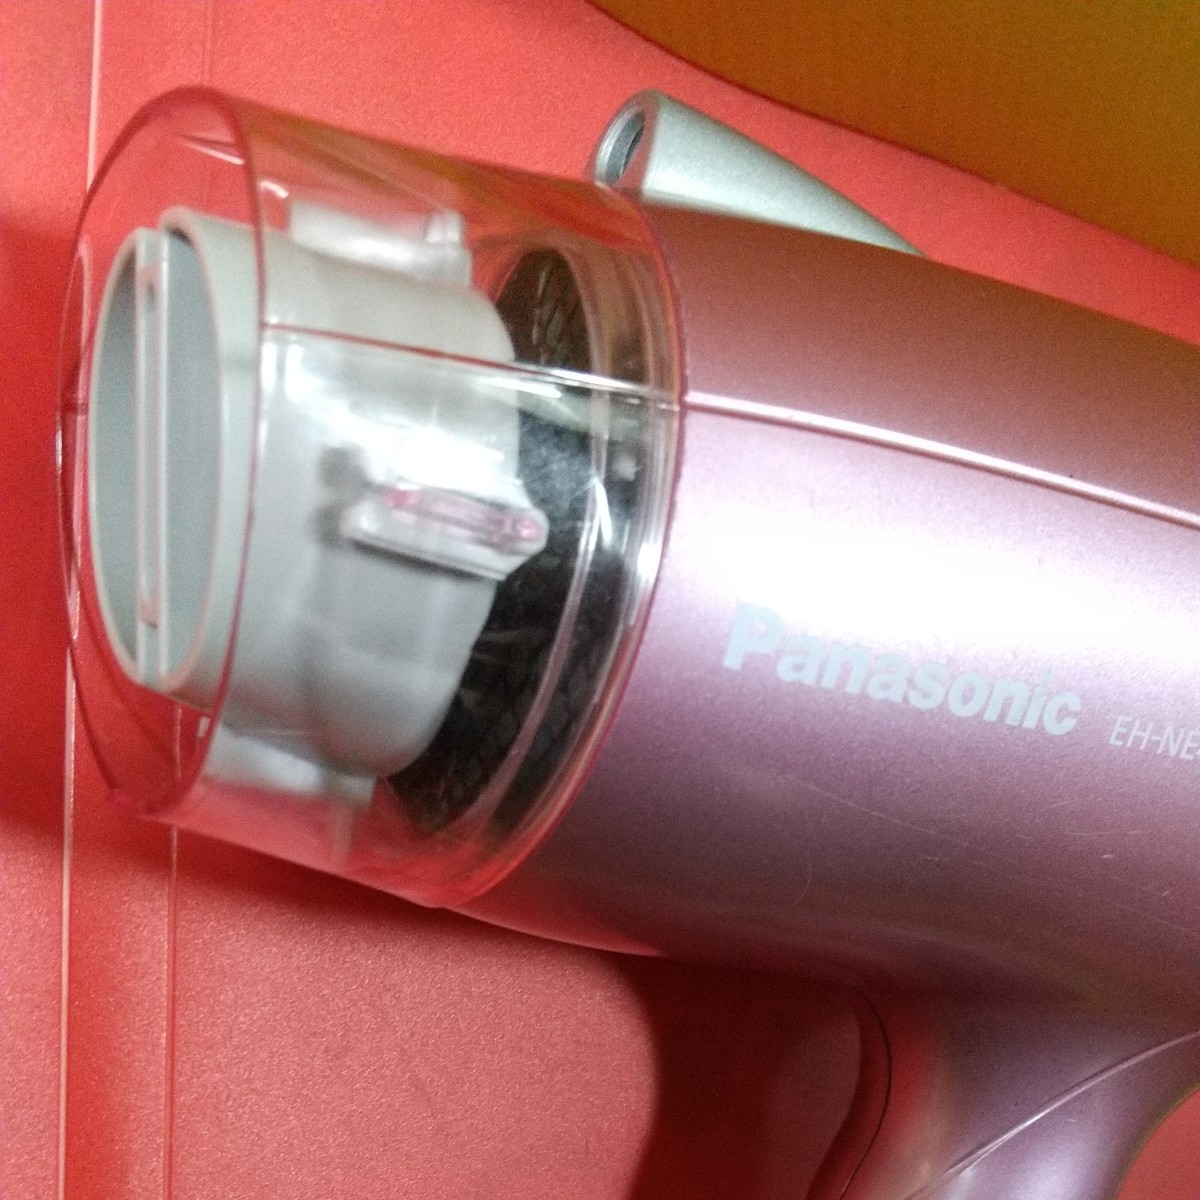 ★ Panasonic マイナス ion charge イオニティ  ヘアドライヤー EH-NE46―P  (PINK)  ピンク